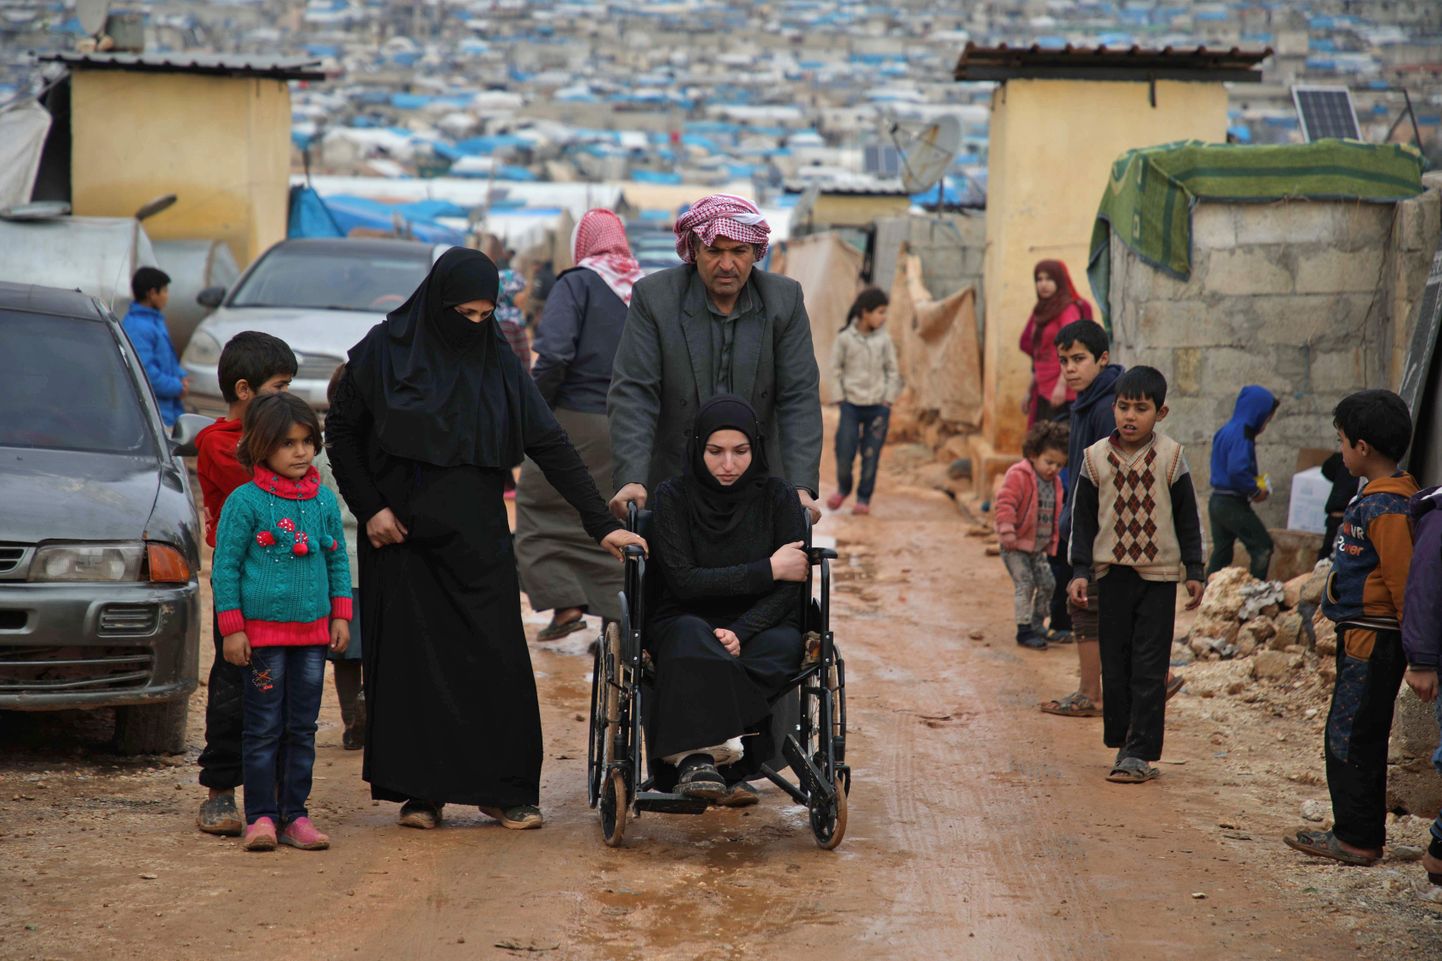 Tsiviilisikud Hama provintsis Süürias.